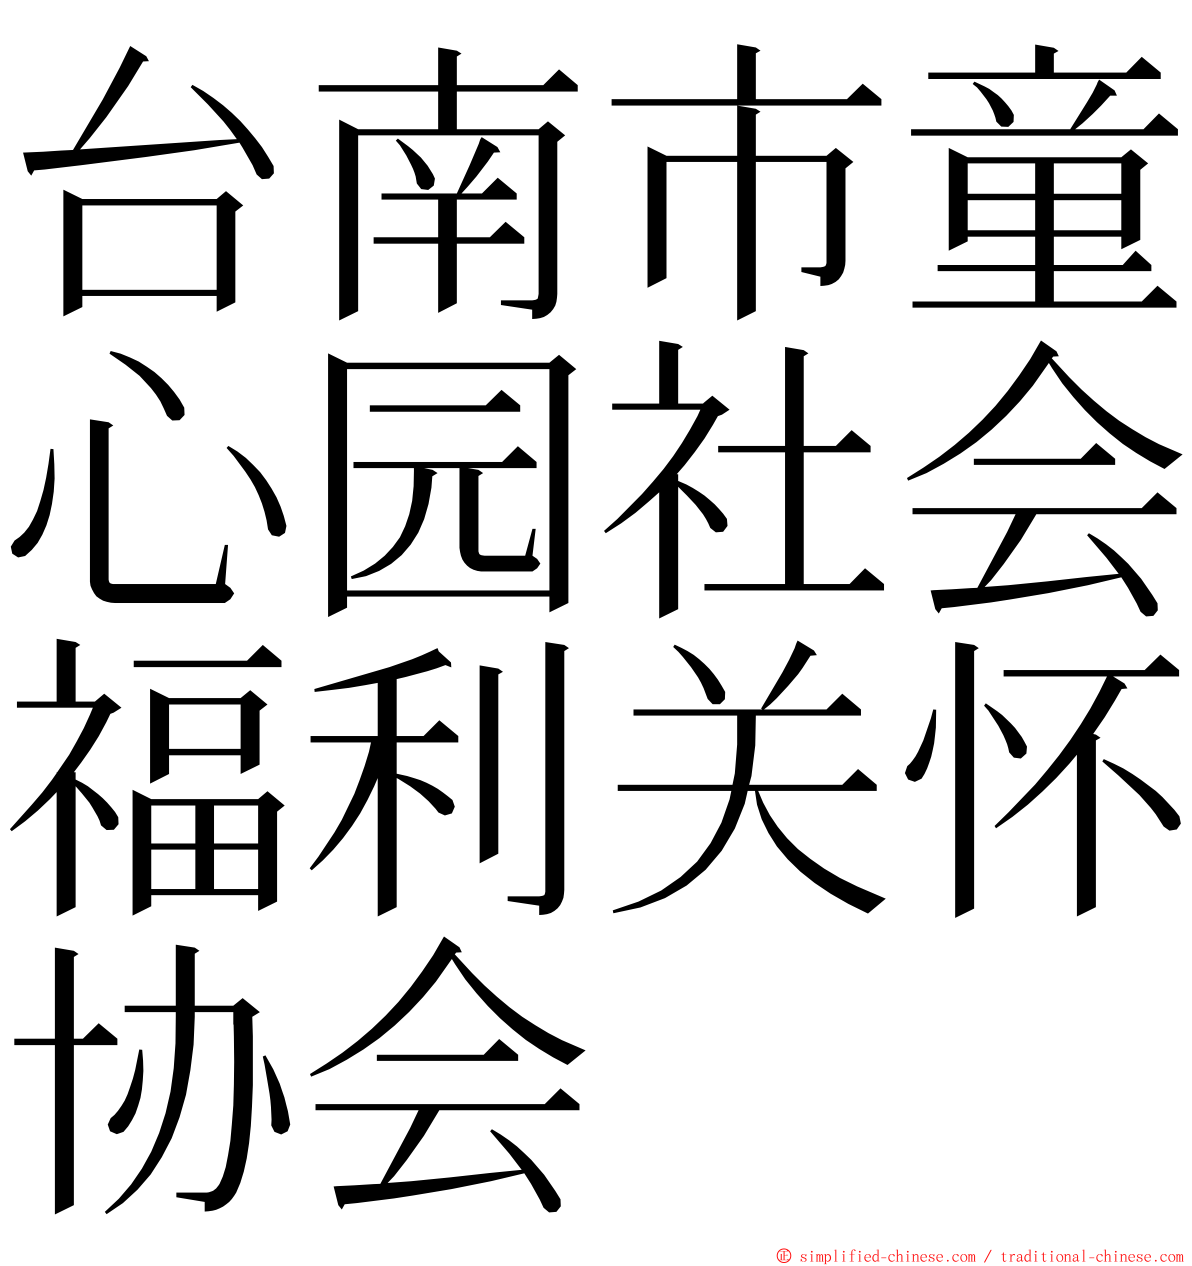 台南市童心园社会福利关怀协会 ming font